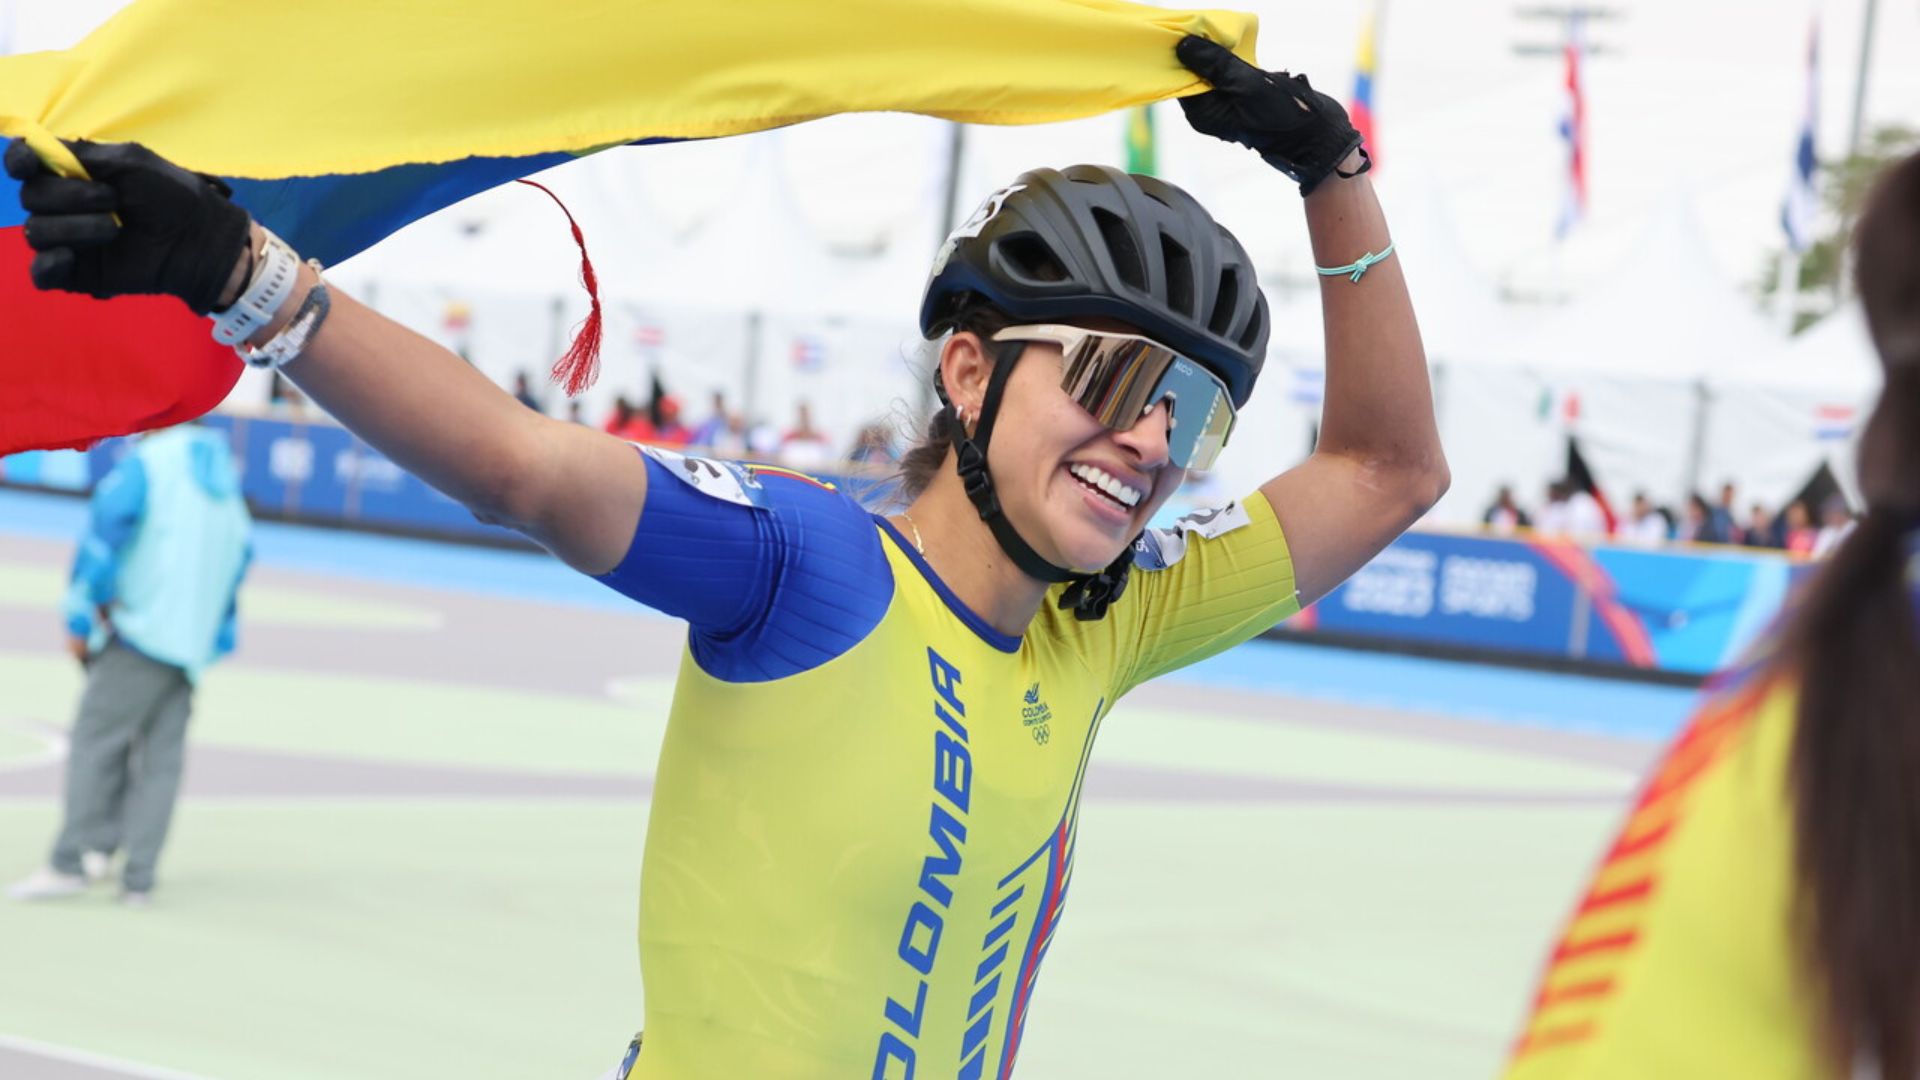 Patinaje de velocidad: Colombia mandó en 10 mil metros eliminación femenino